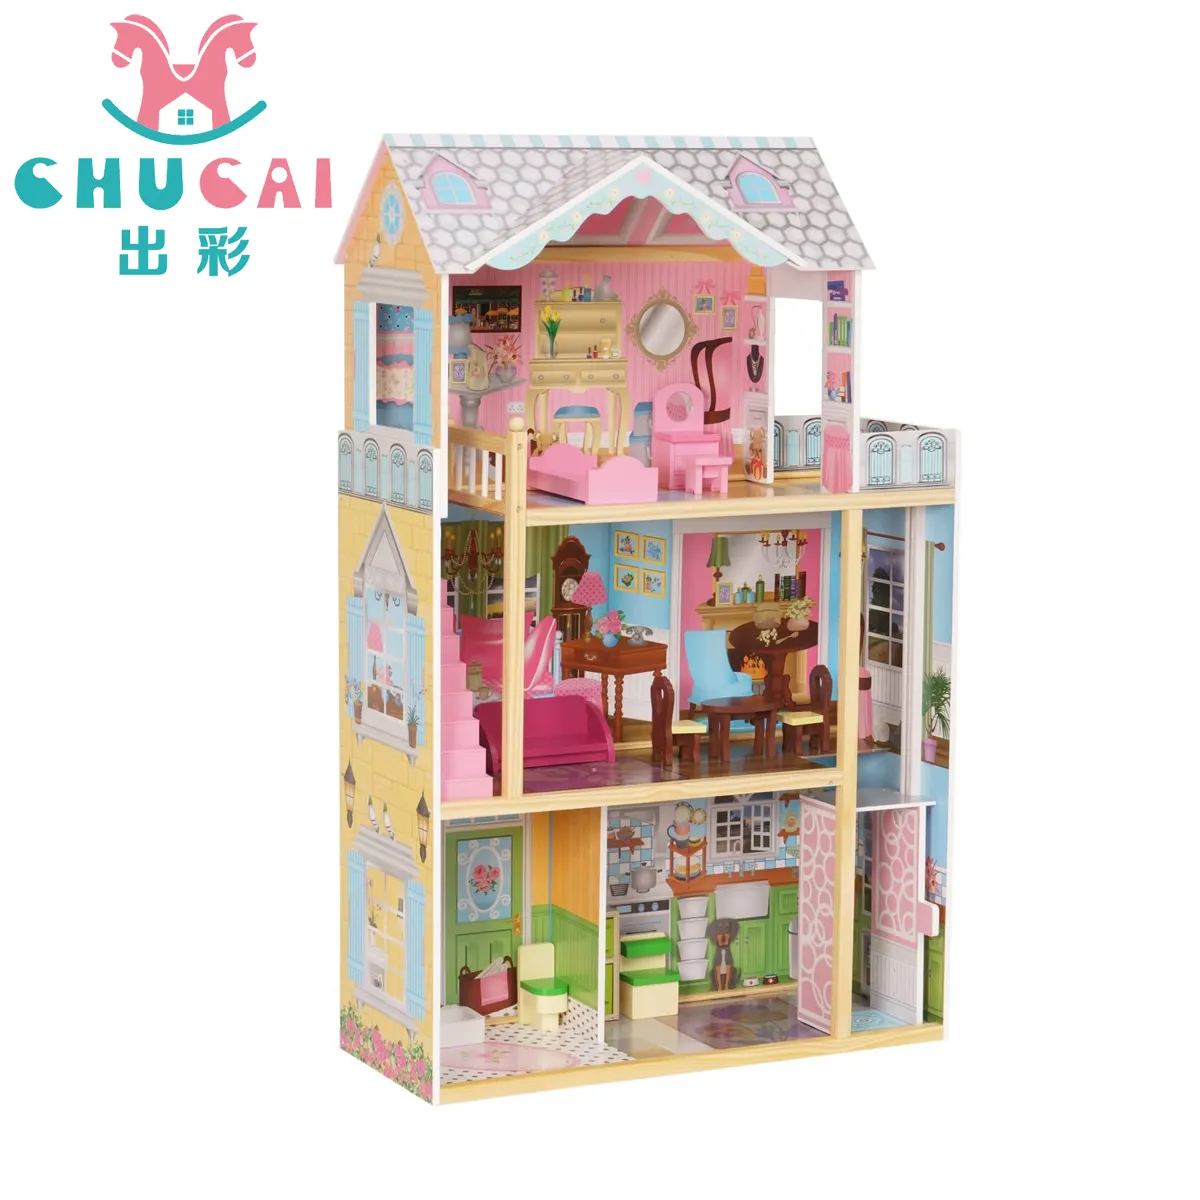 Le nuove ragazze più calde in miniatura casa delle bambole in legno giocattoli casa delle bambole principessa in legno con mobili per bambole